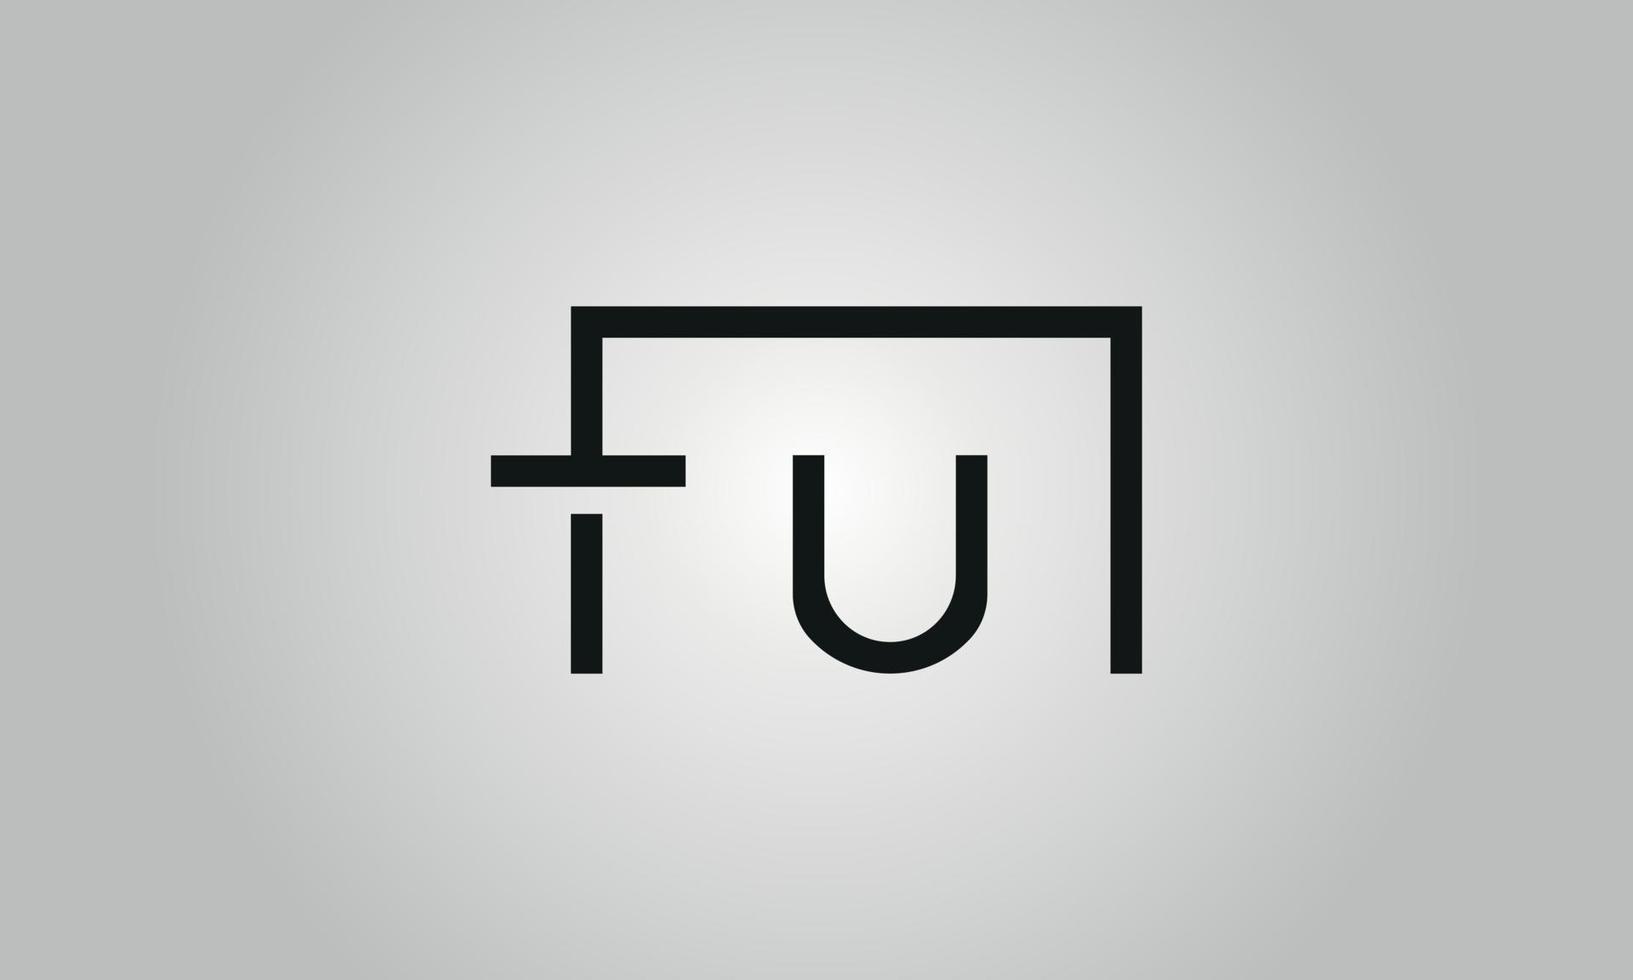 Buchstabe tu Logo-Design. tu-Logo mit quadratischer Form in schwarzen Farben Vektor kostenlose Vektorvorlage.